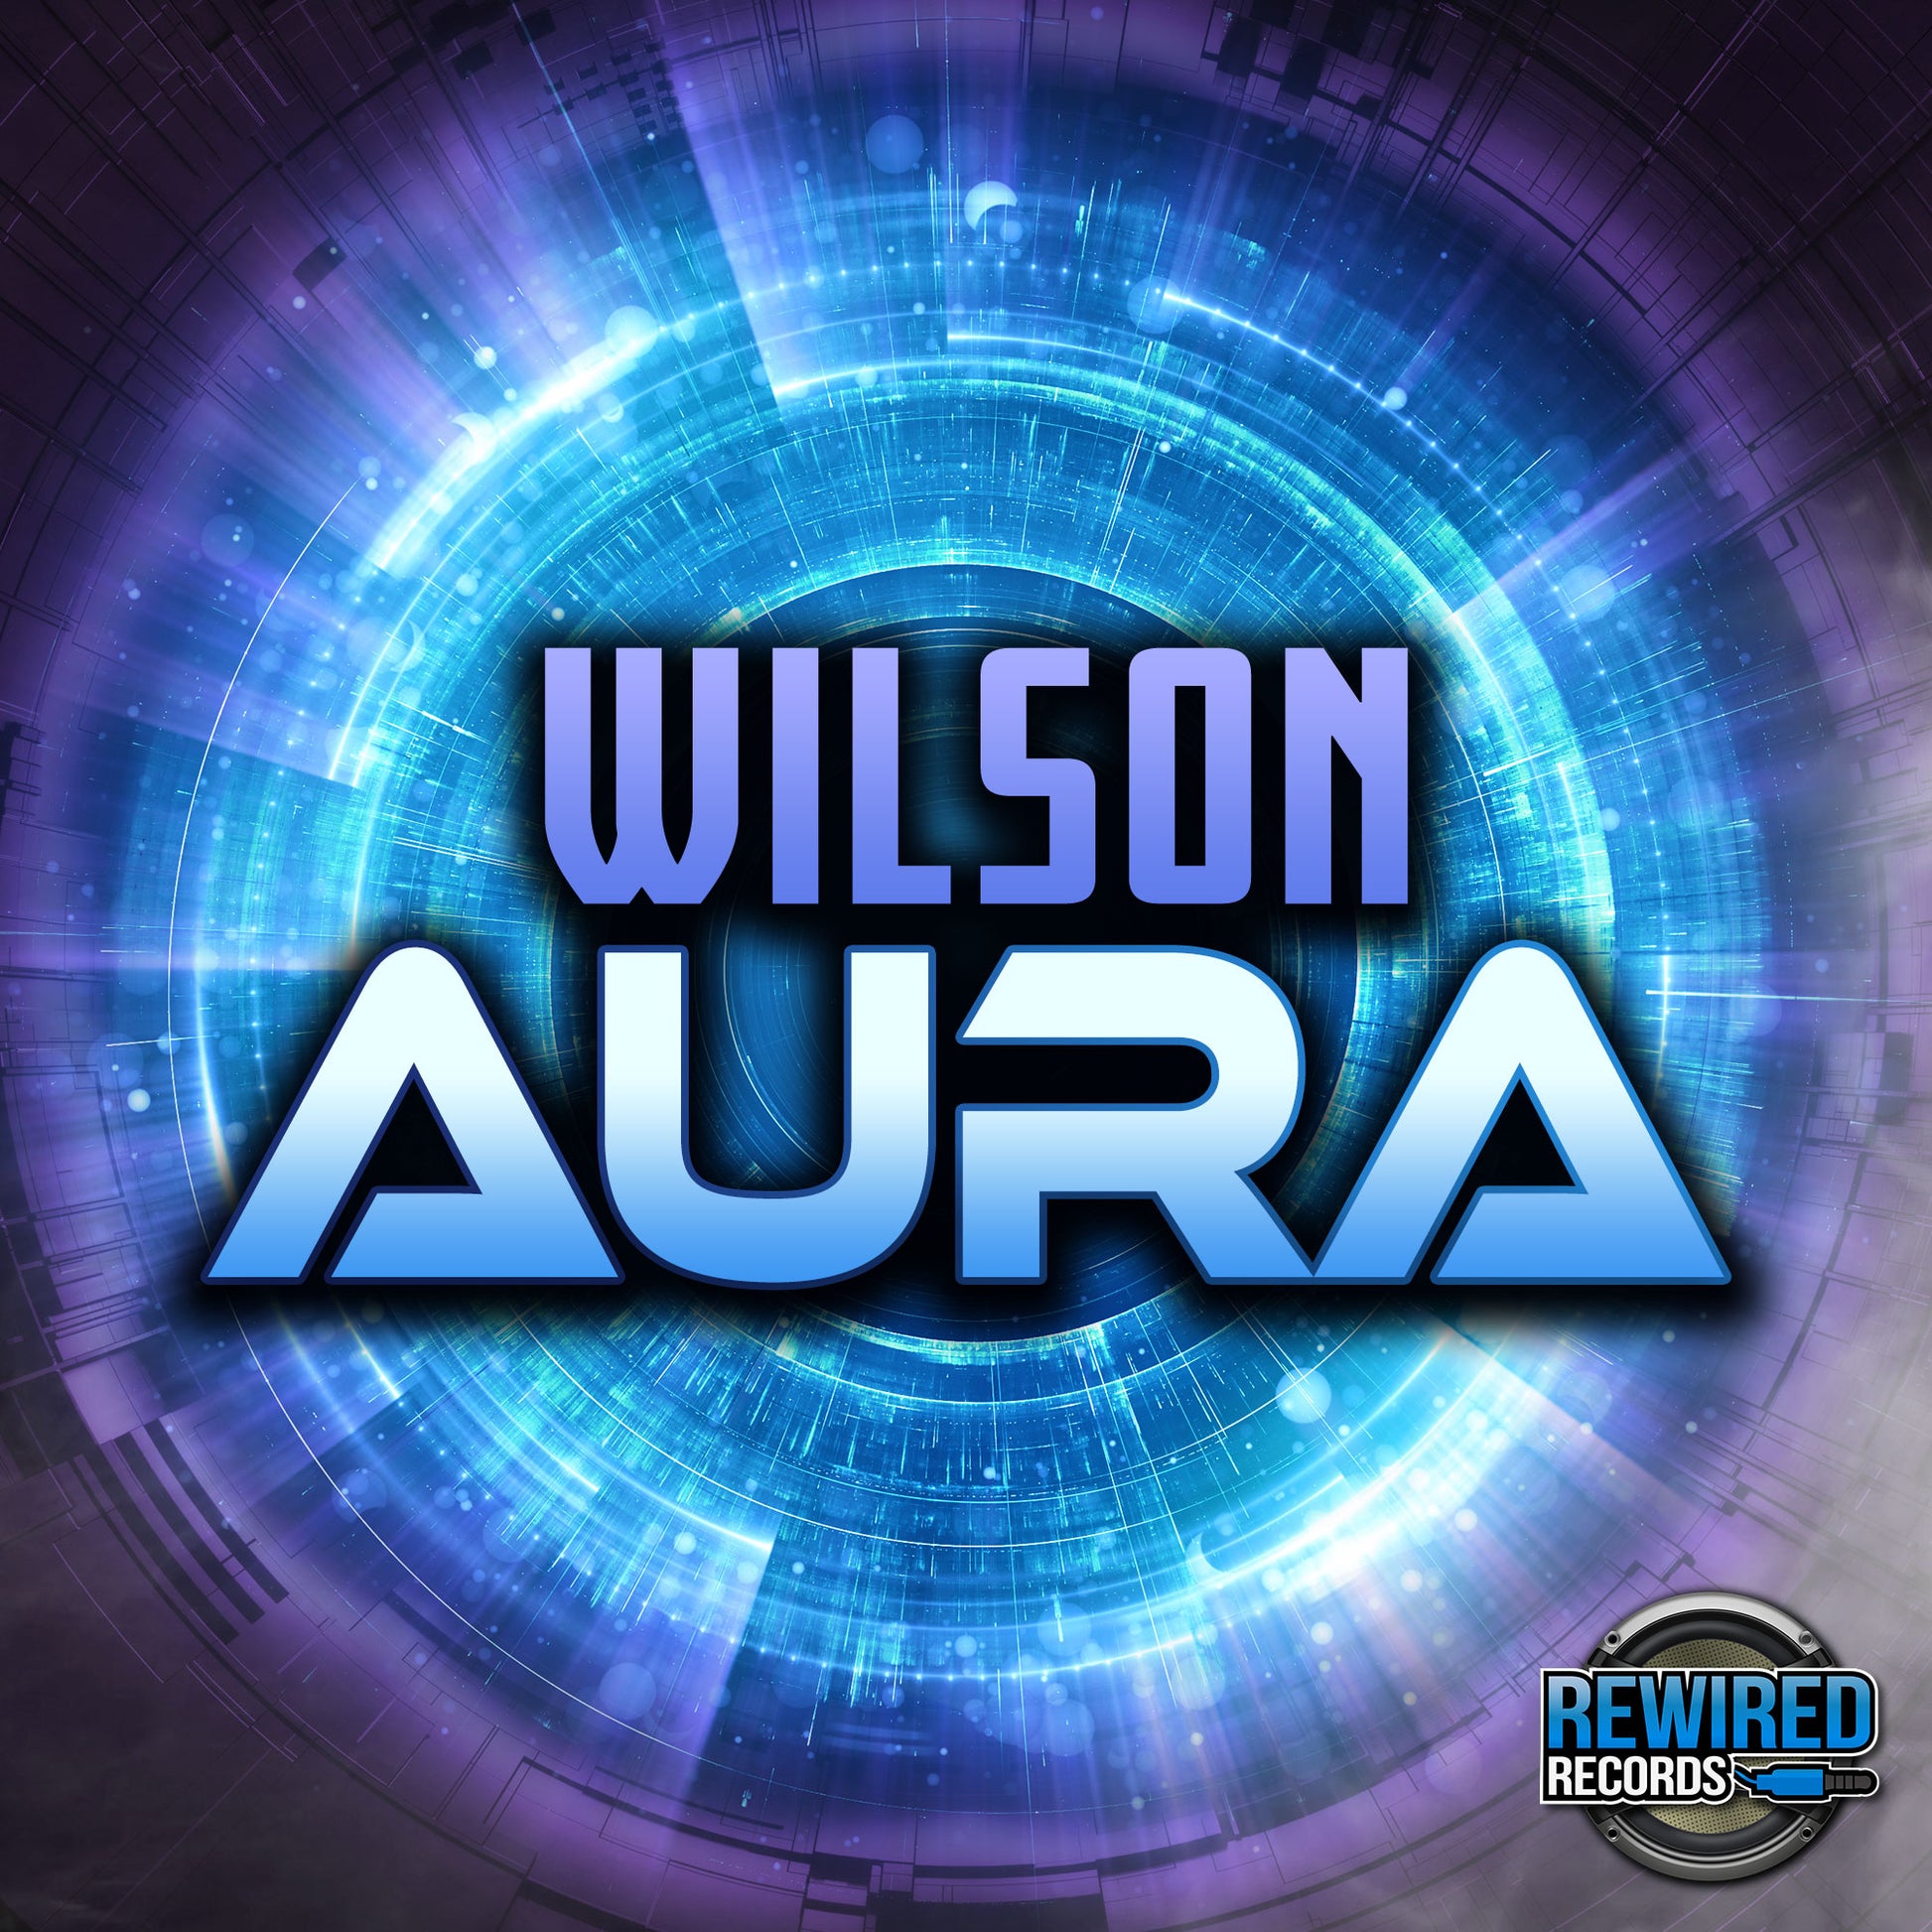 Wilson - Aura - Rewired Records